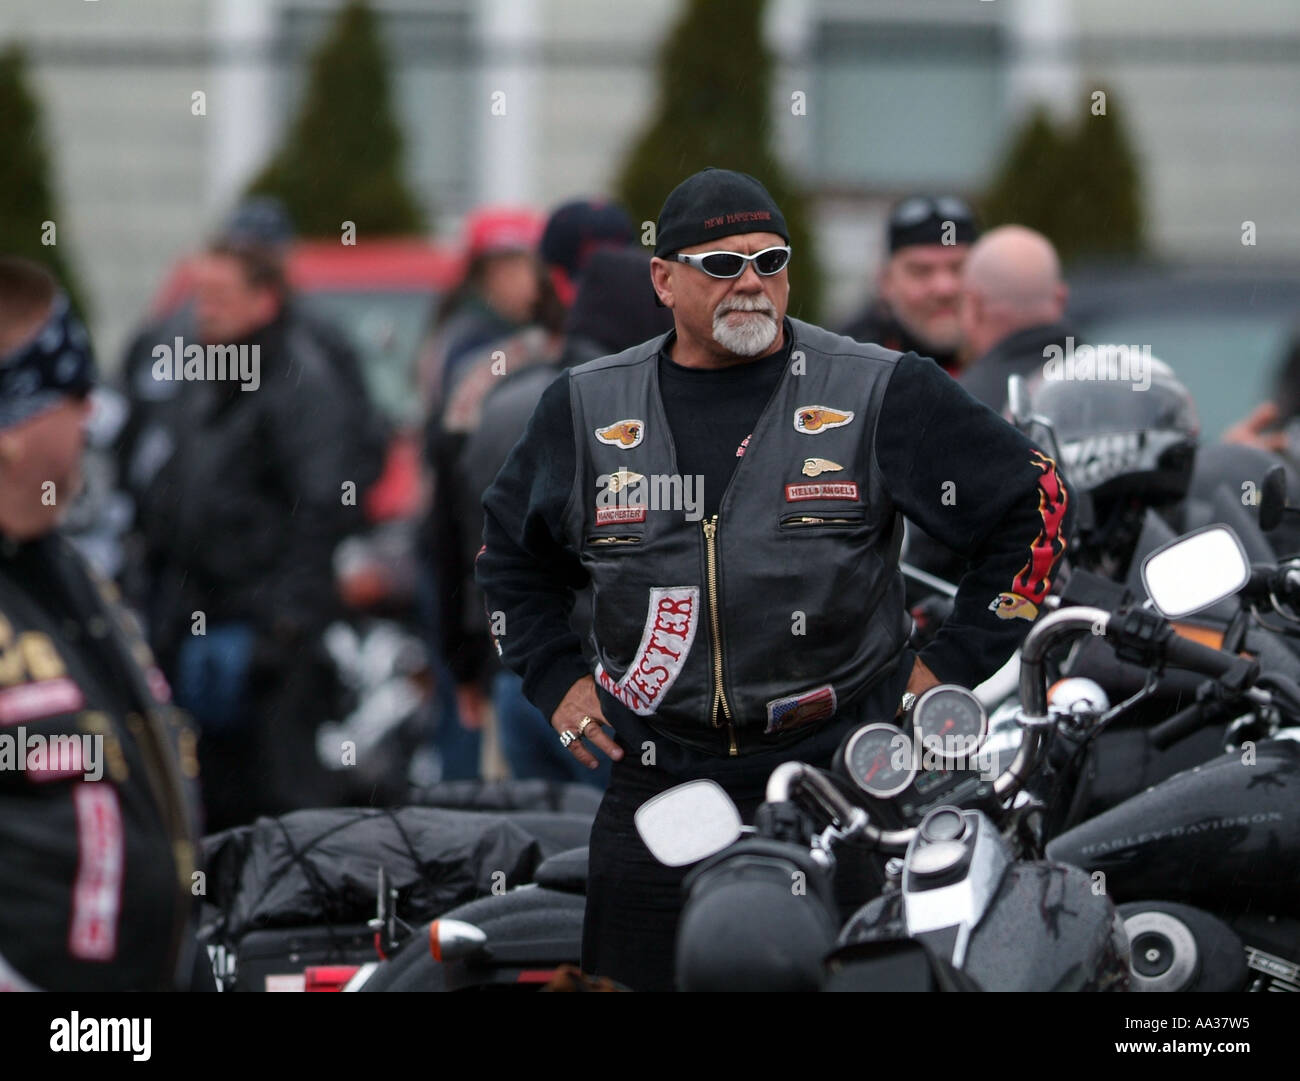 Hells Angels Beerdigung Motorrad-Club-Mitglieder bei Beerdigung für Mitglied, niedergeschossen wurde Stockfoto